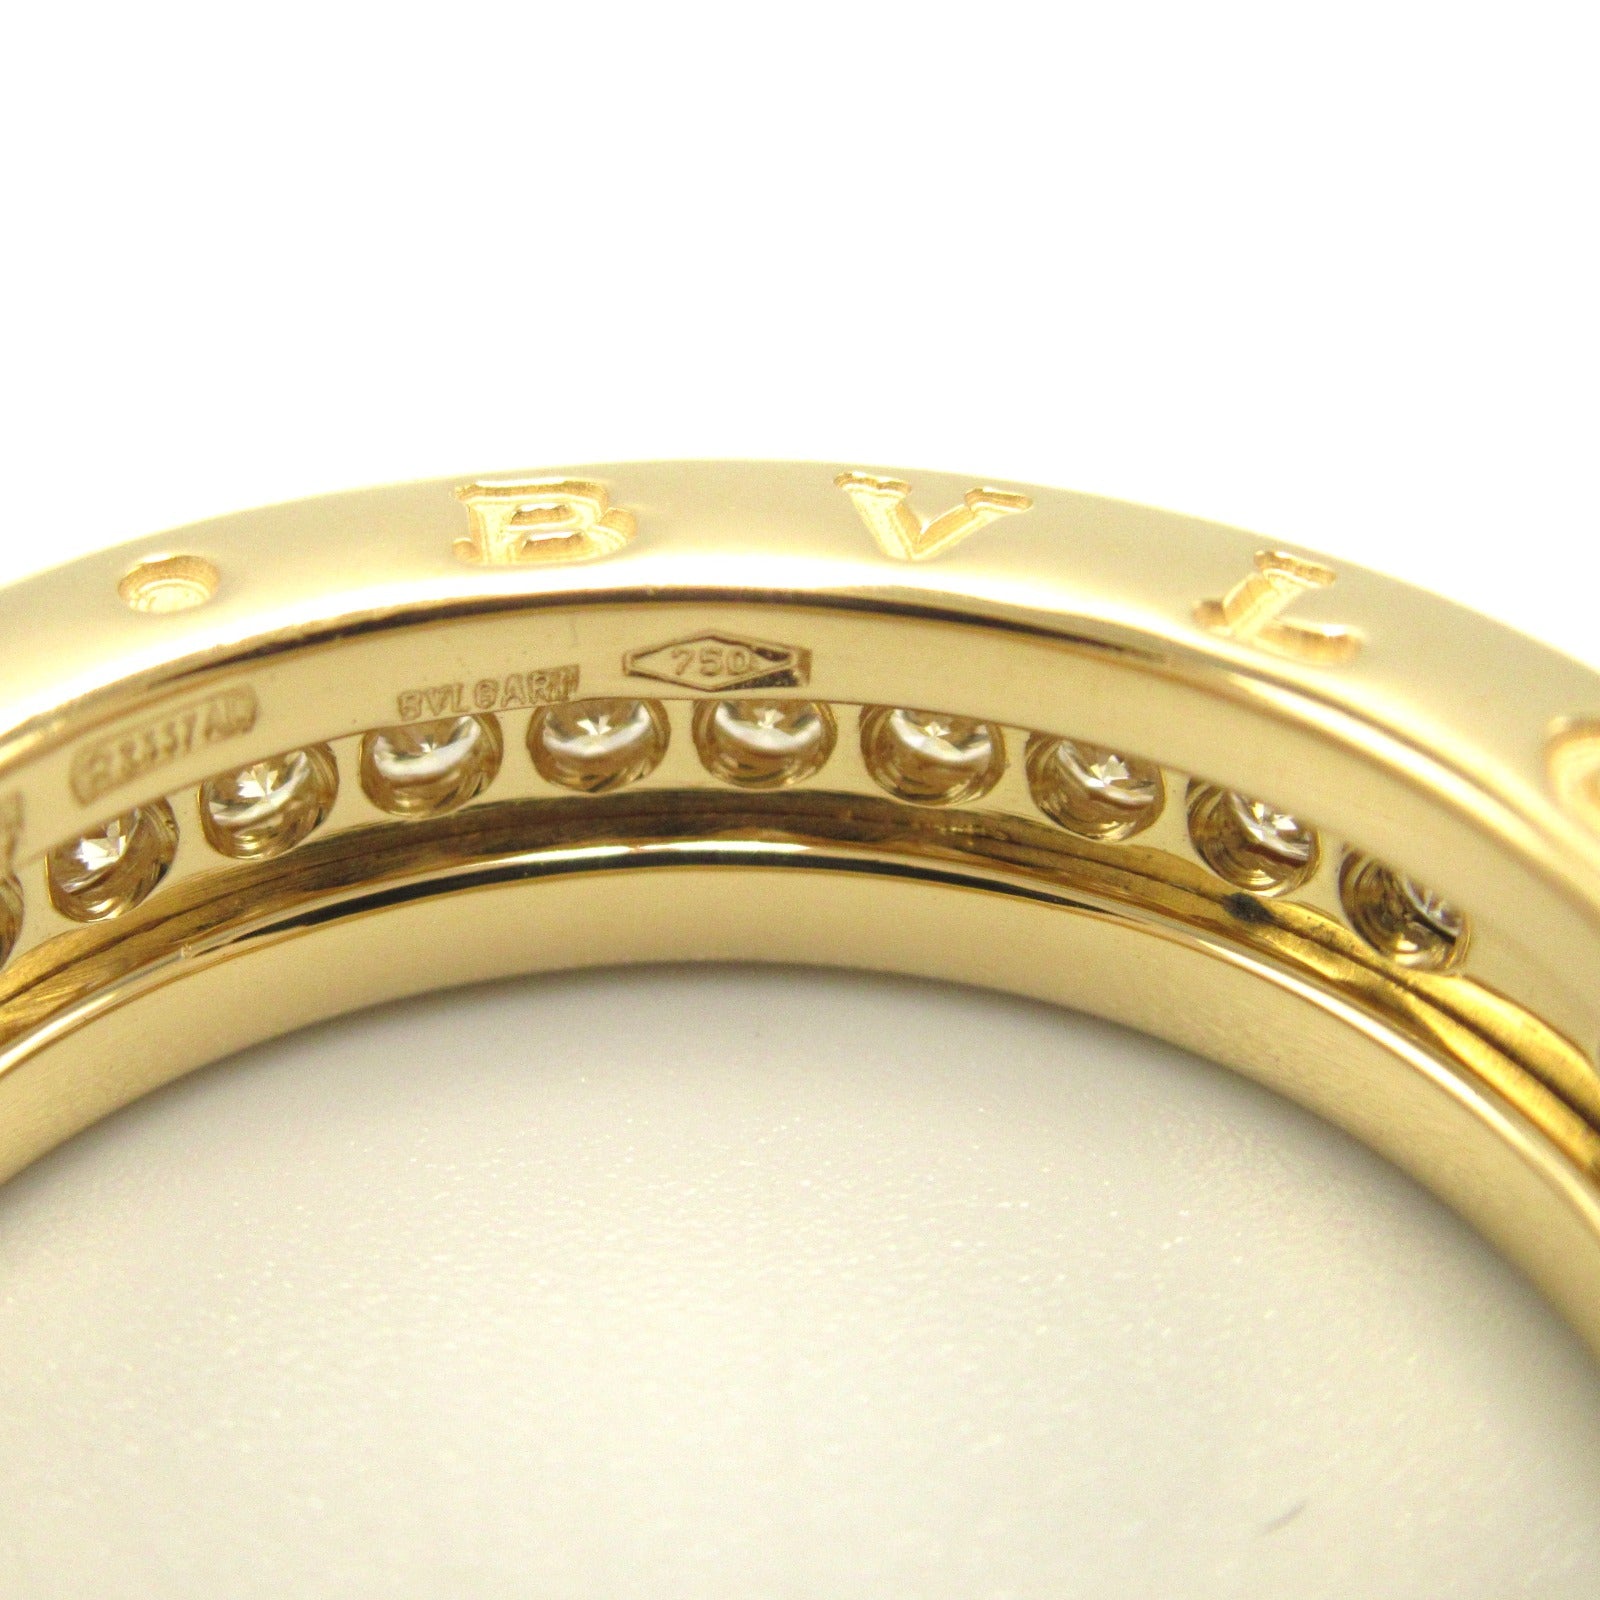 Bulgari BVLGARI B-zero1 Beezero One 4 Band Ring Ring Ring Ring Jewelry K18 (Yellow G)   G